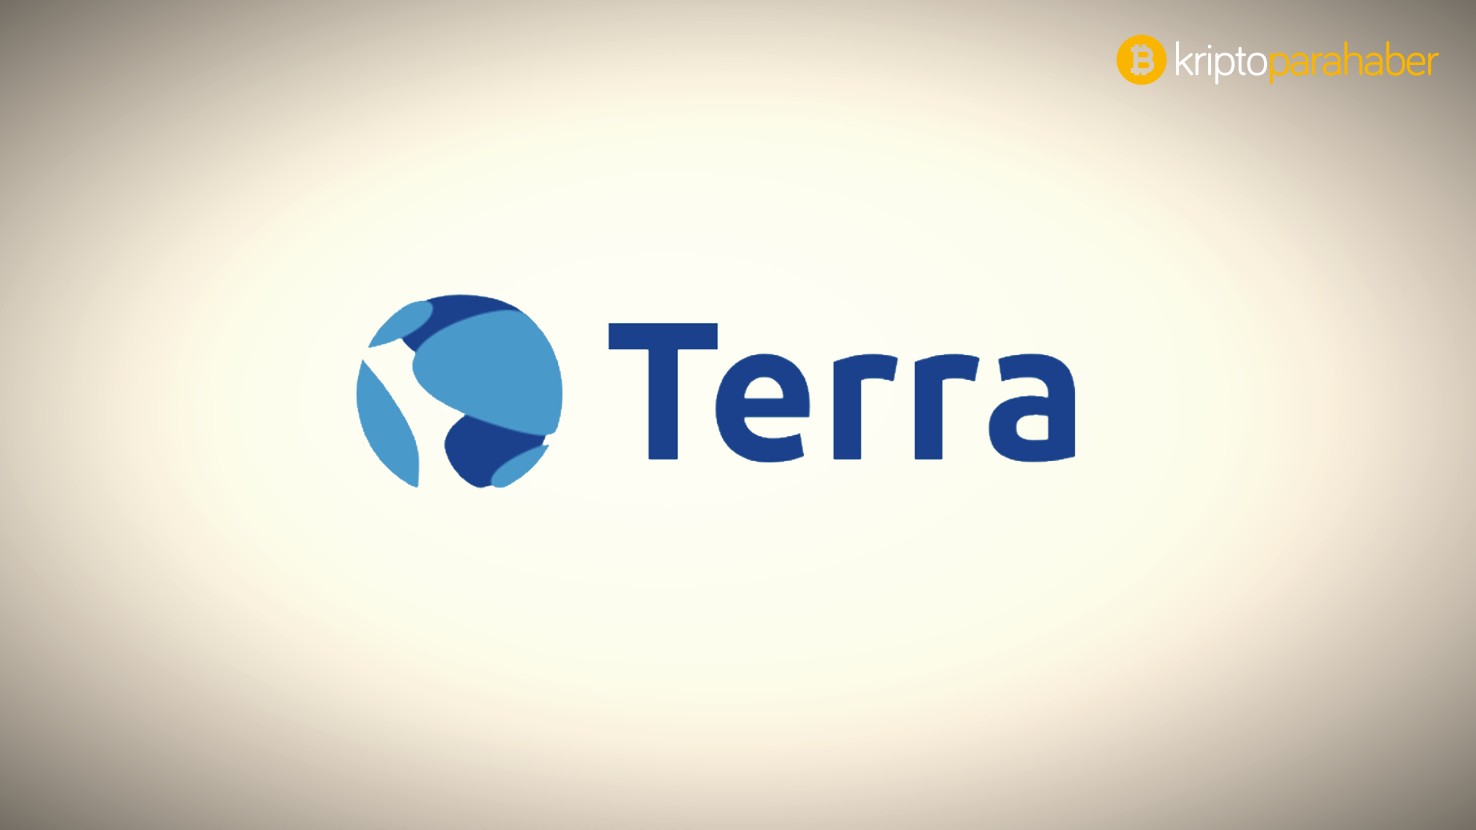 XDEFI cüzdanı, artık Terra tarafından desteklenmeye başladı!